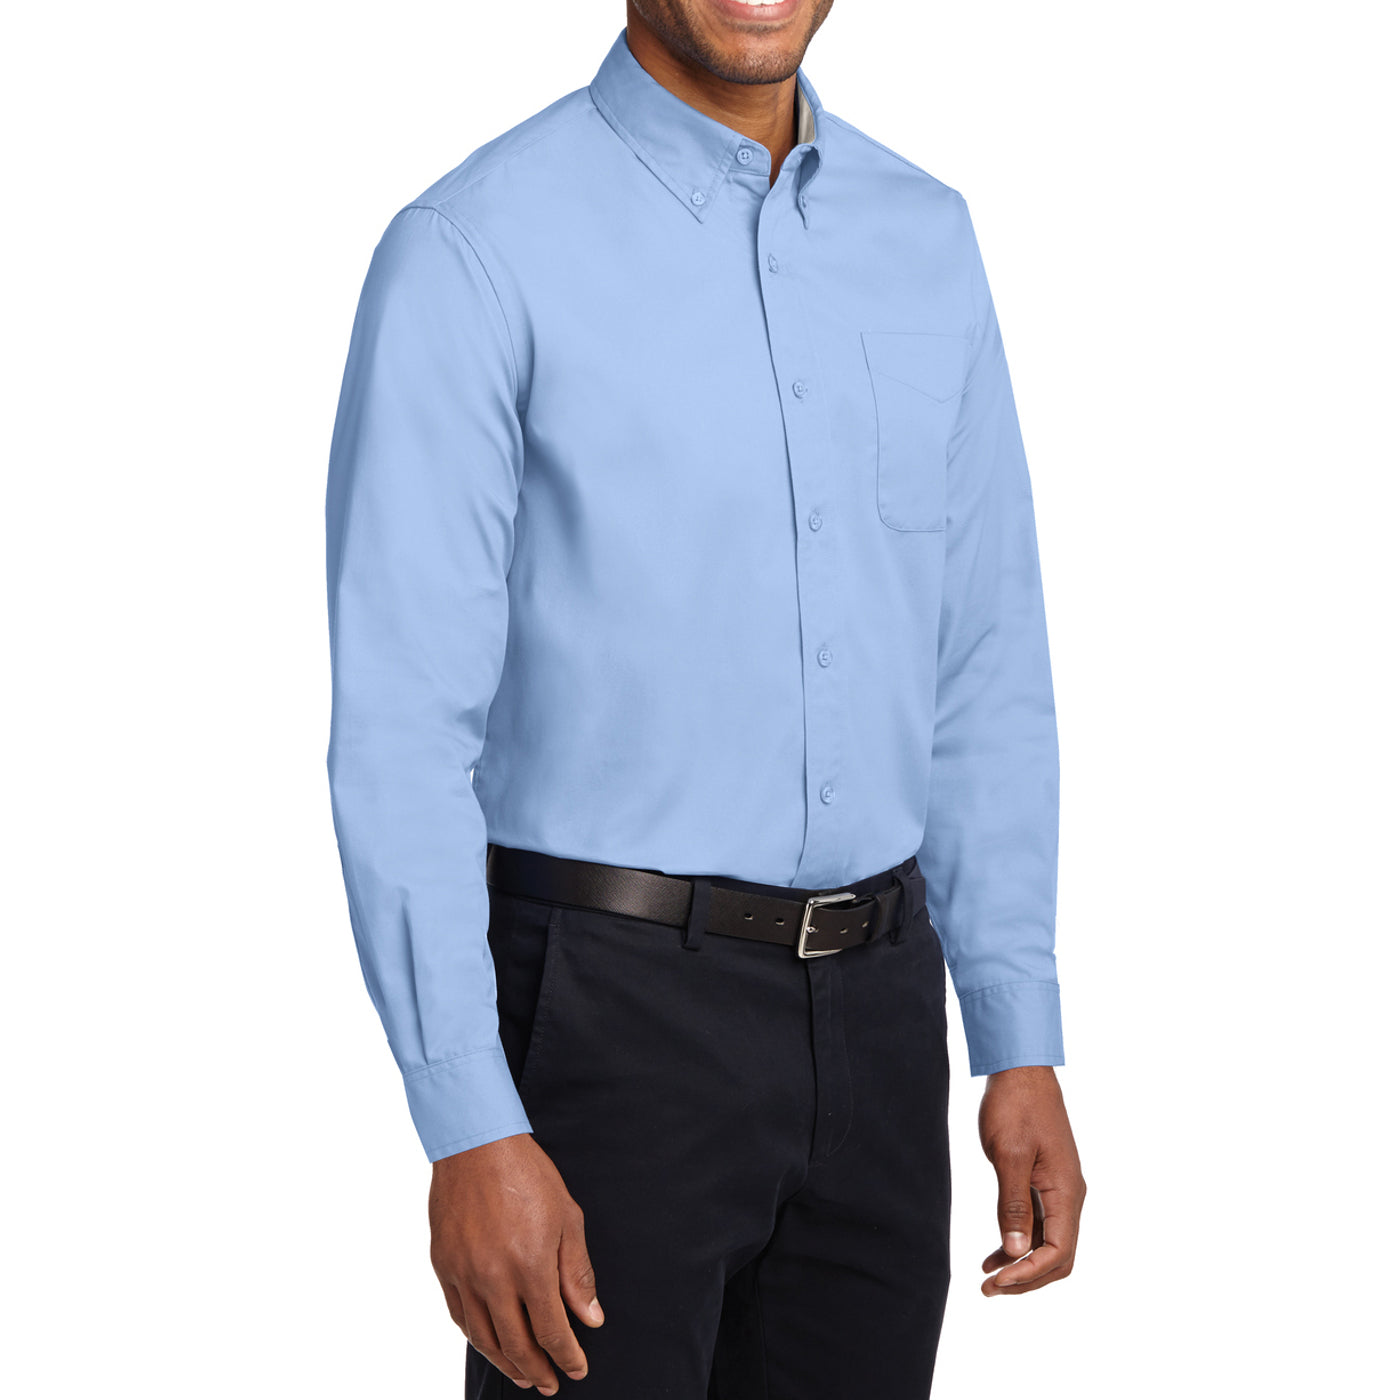 Men's Long Sleeve Easy Care Shirt - Light Blue/ Light Stone - Side